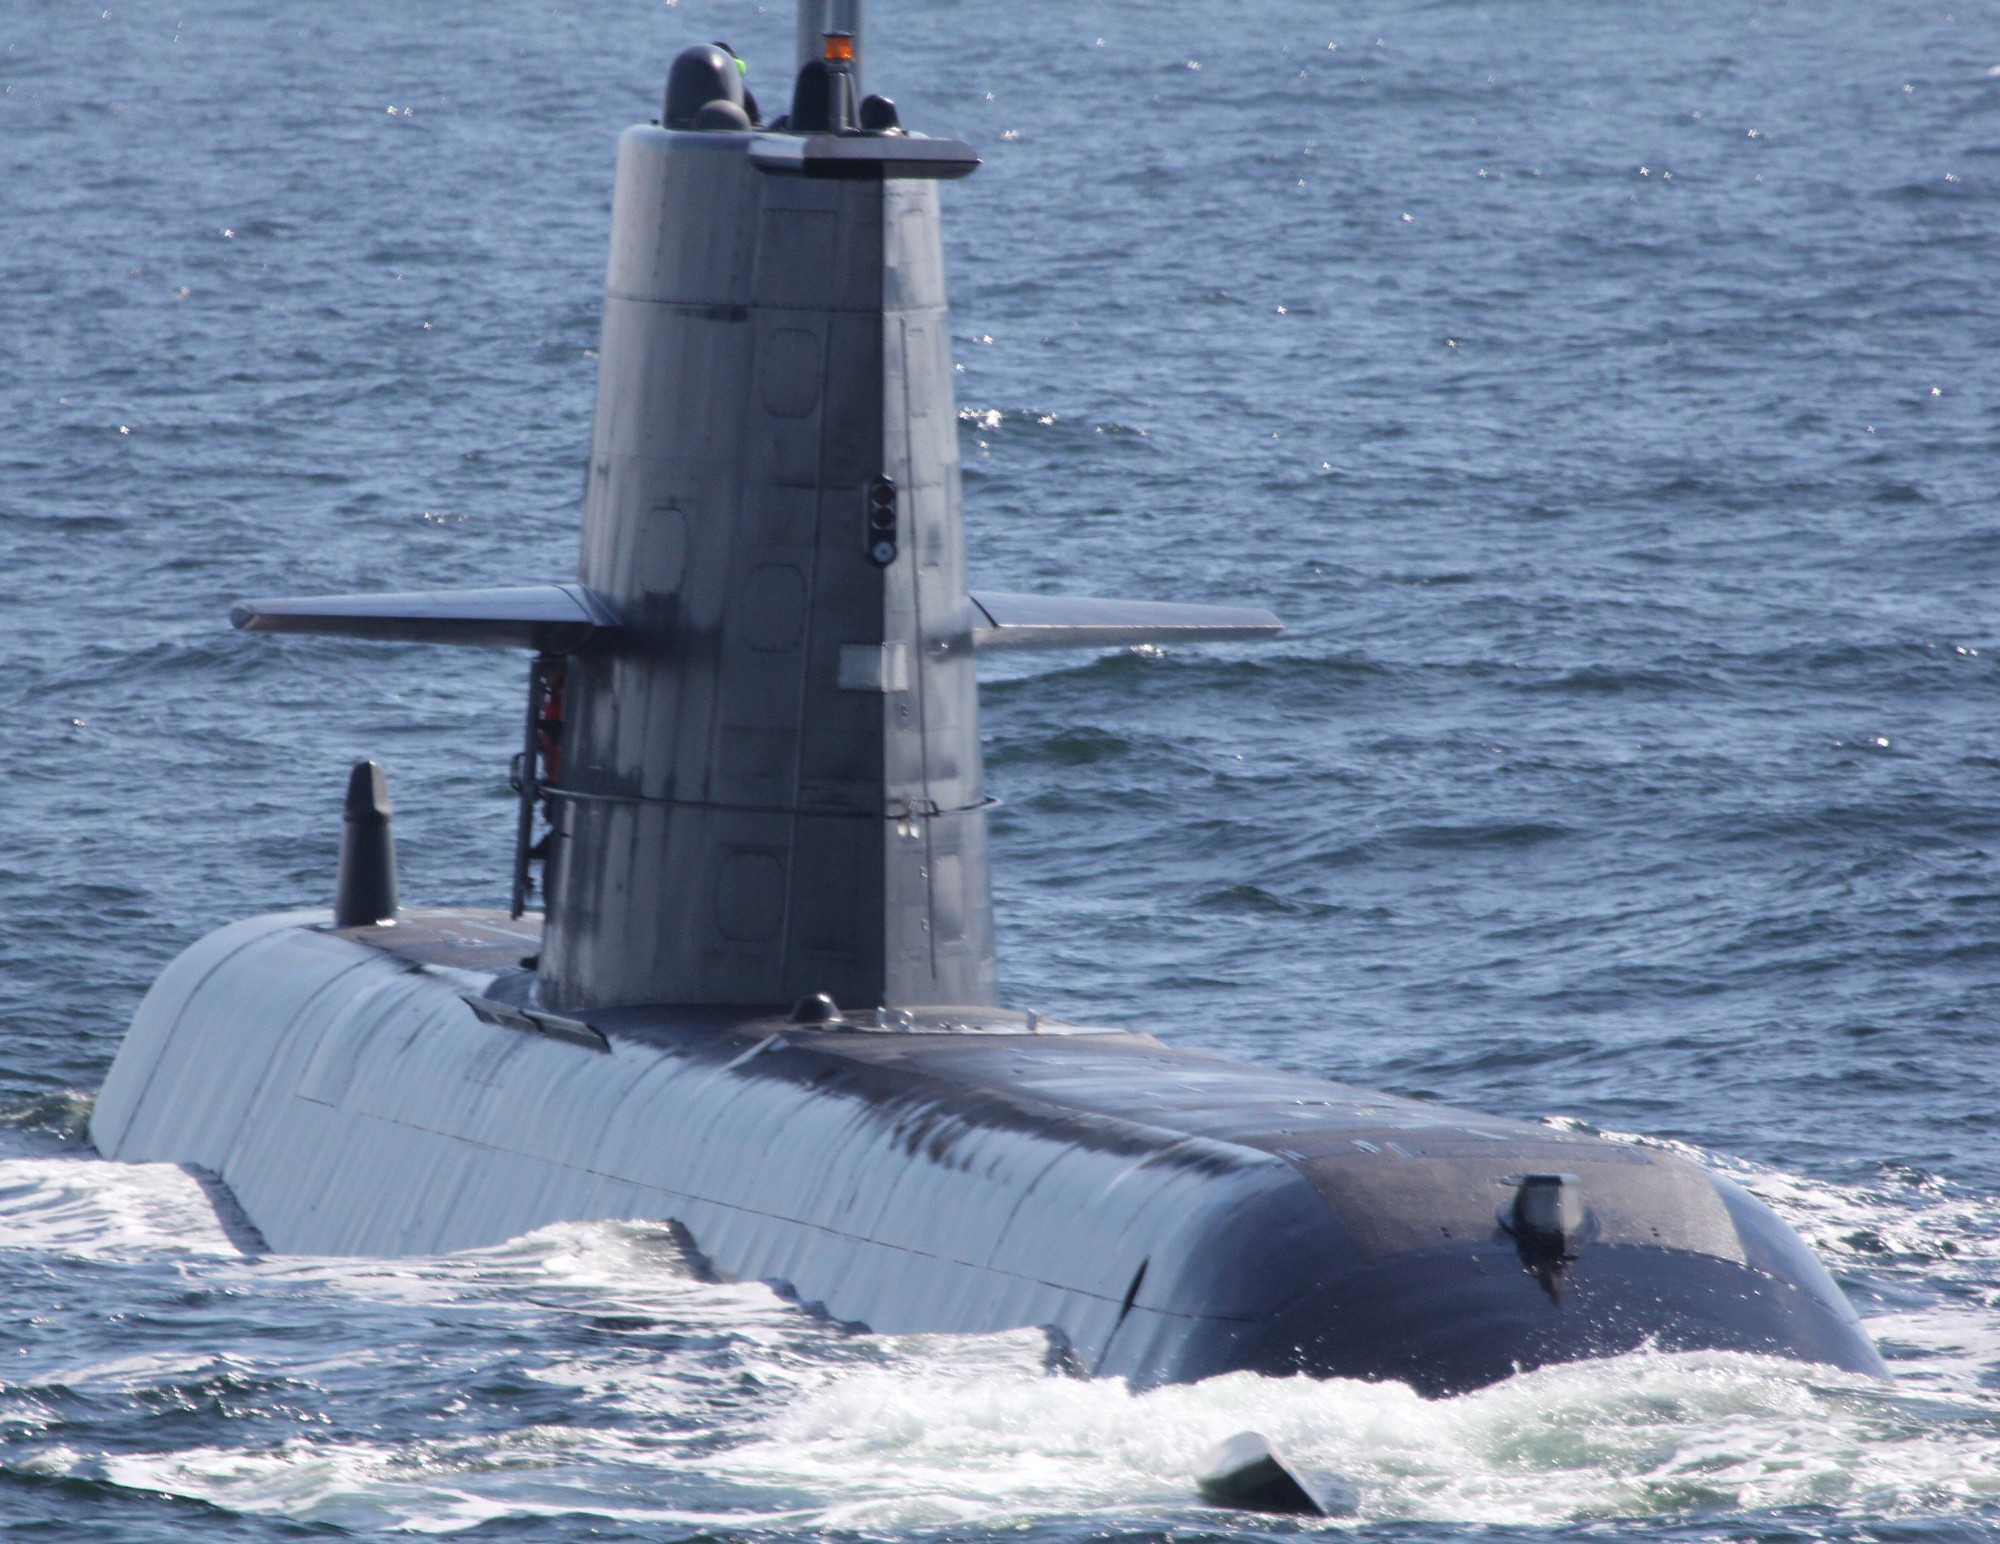 hswms hms halland hnd gotland class submarine ssk swedish navy svenska marinen försvarsmakten kockums 03